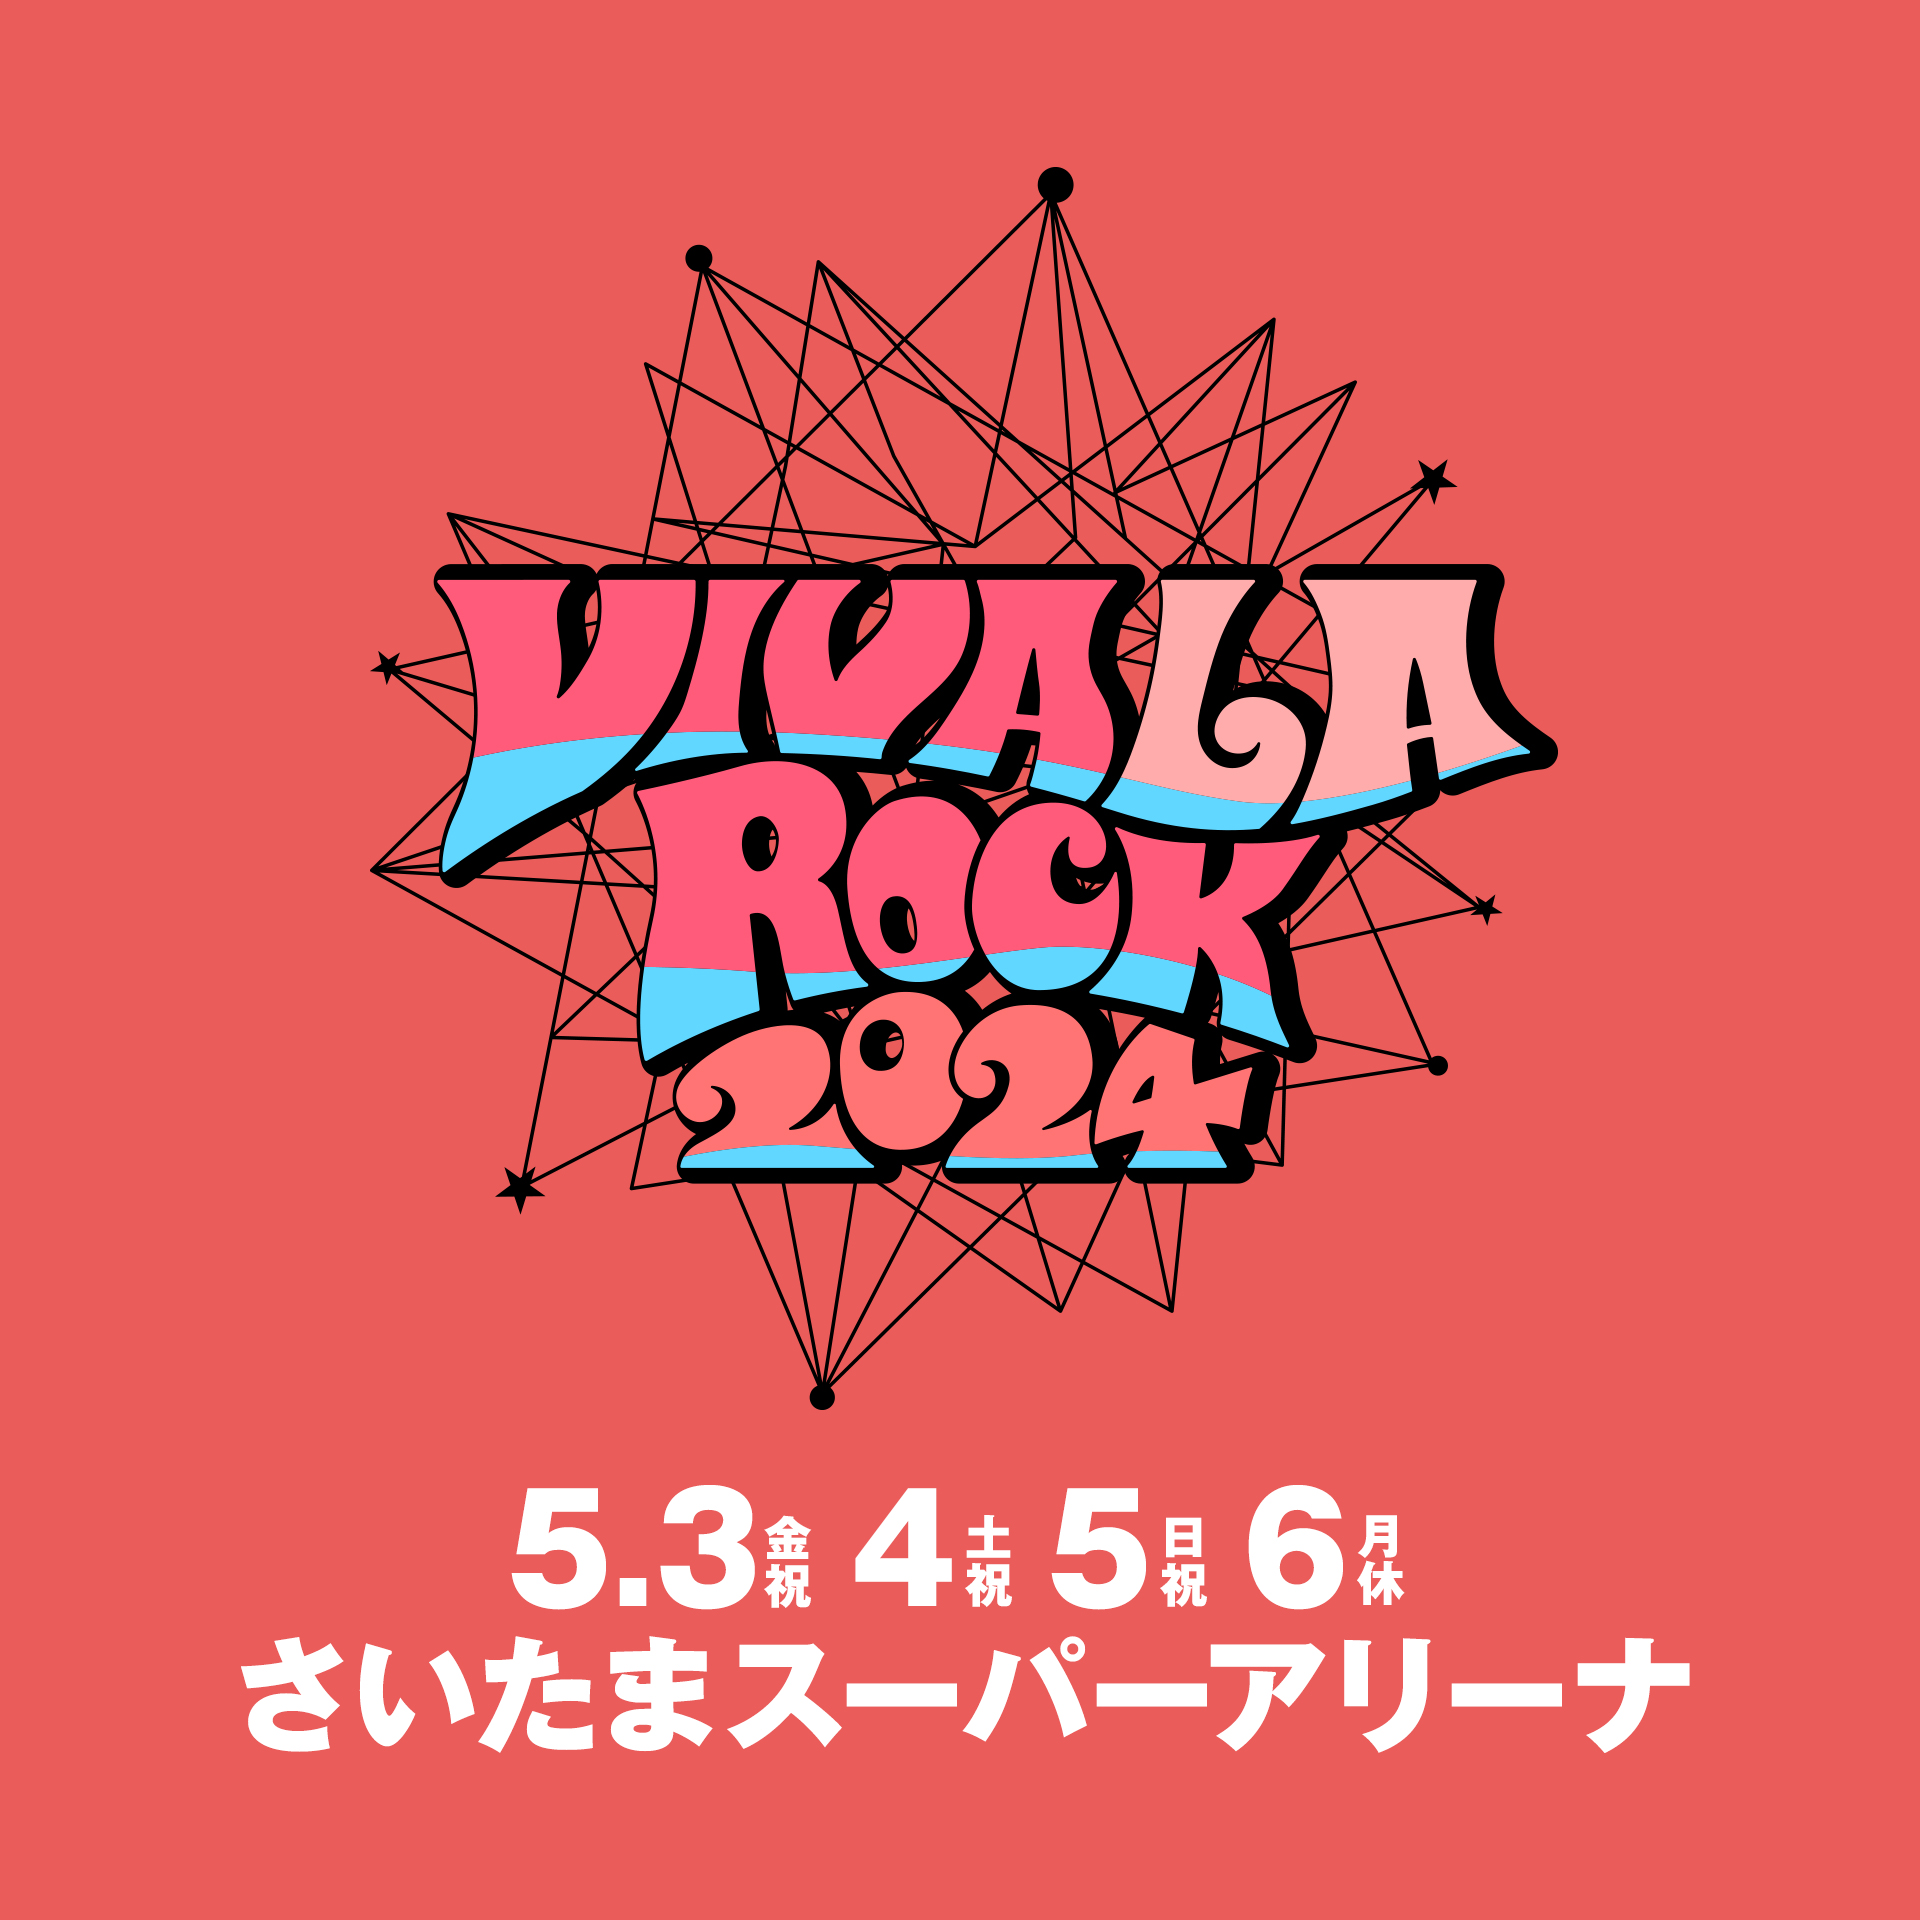 VIVA LA ROCK（ビバ・ラ・ロック）チケット受付ページ - イープラス